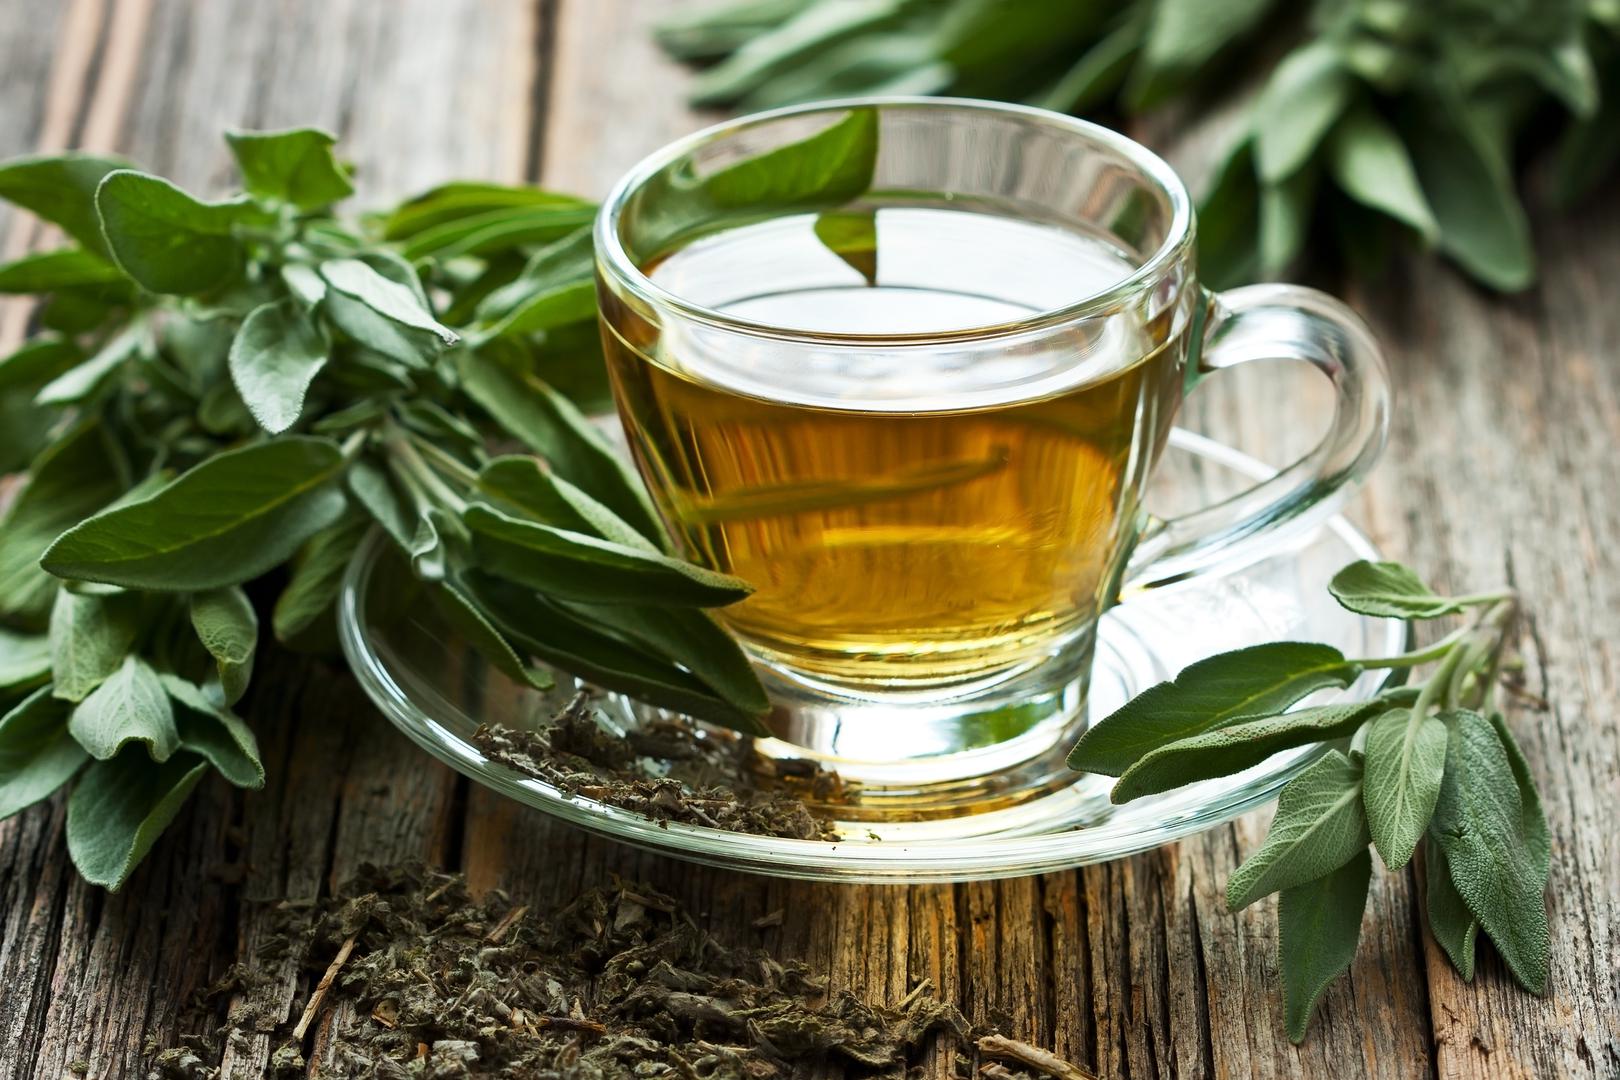 Zeleni čaj jedan je od najzdravijih napitaka na svijetu. Razbudit će vas, a sadrži poseban antioksidans, poznat kao EGCE, za koji je dokazano da štiti mozak, živčani sustav i srce od oštećenja.